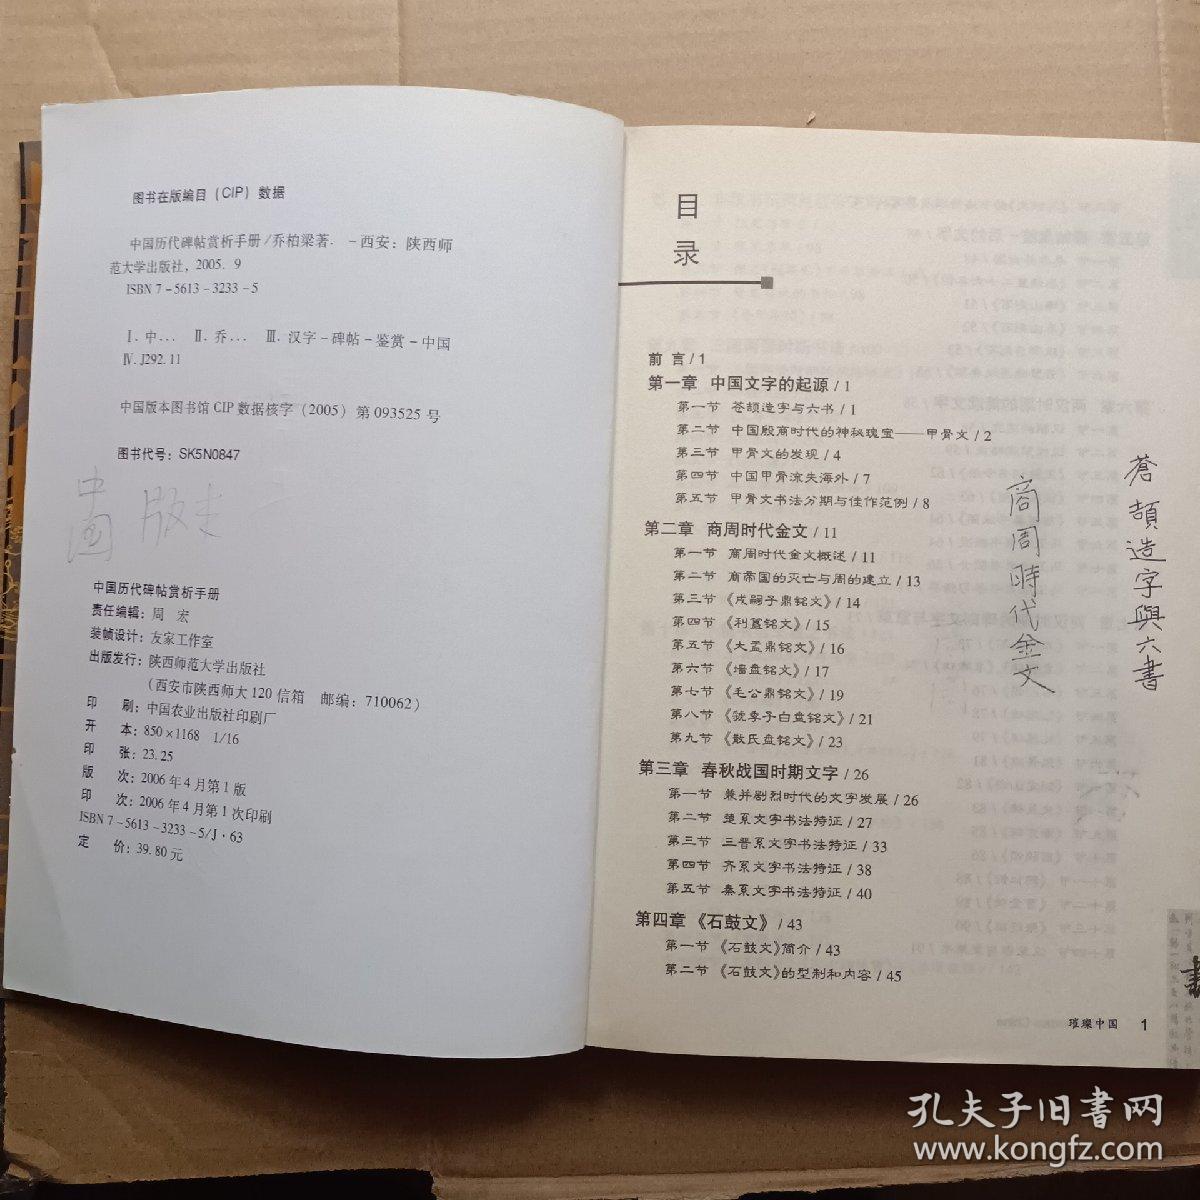 中国历代碑帖赏析手册(有涂写)